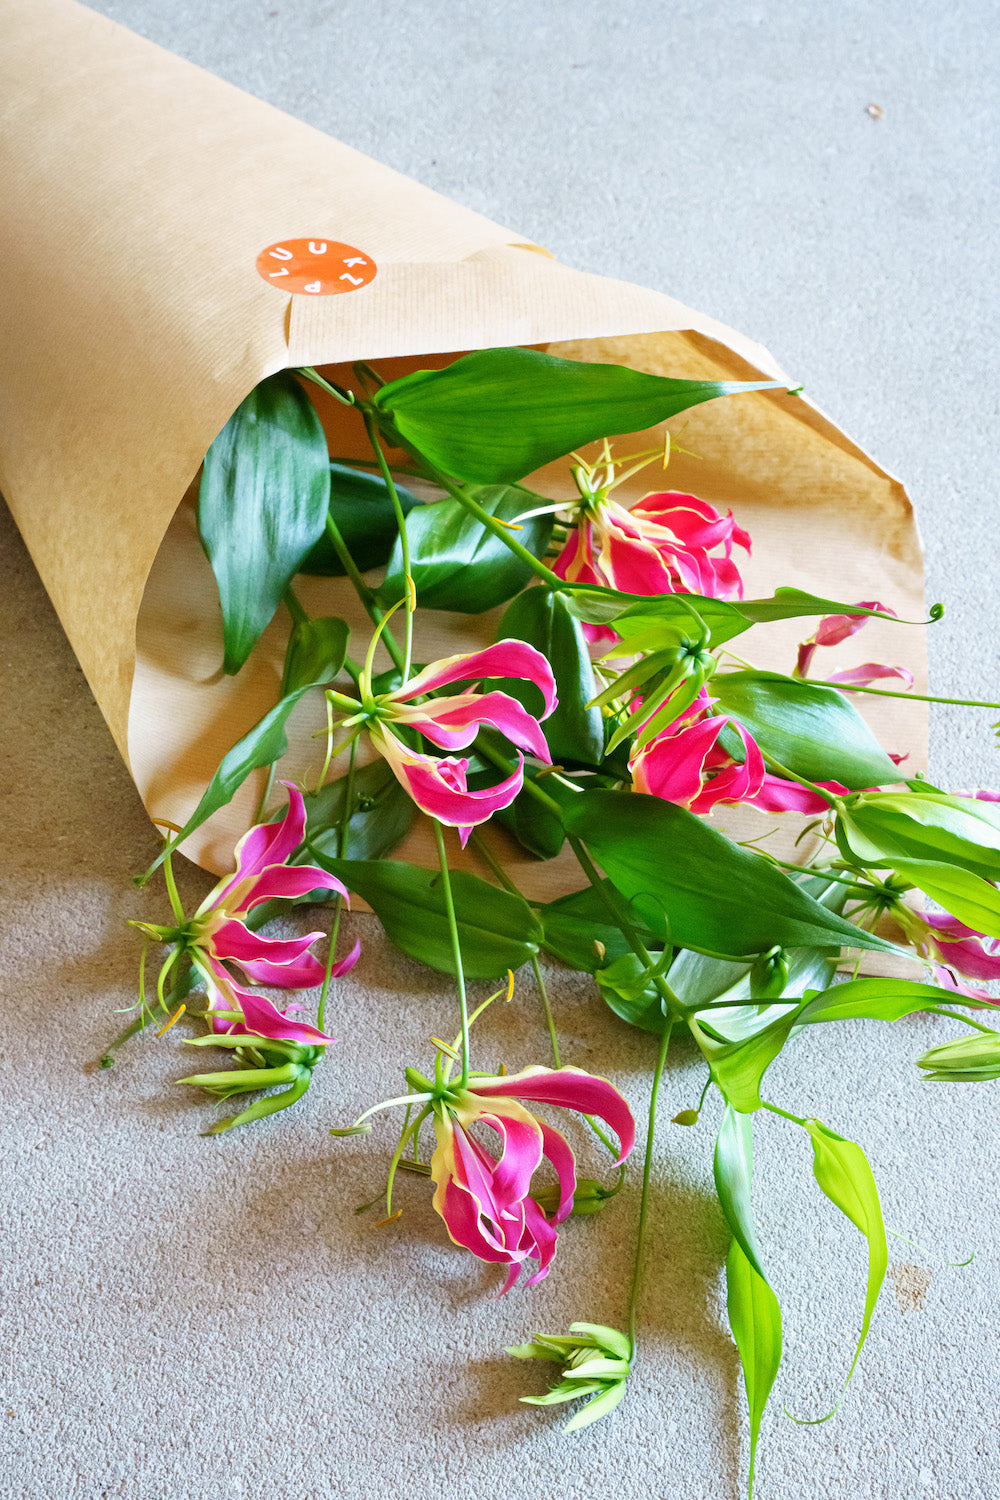 Unieke bloemen bestellen? Deze gloriosa zal je versteld doen staan van de bijzondere bloem!